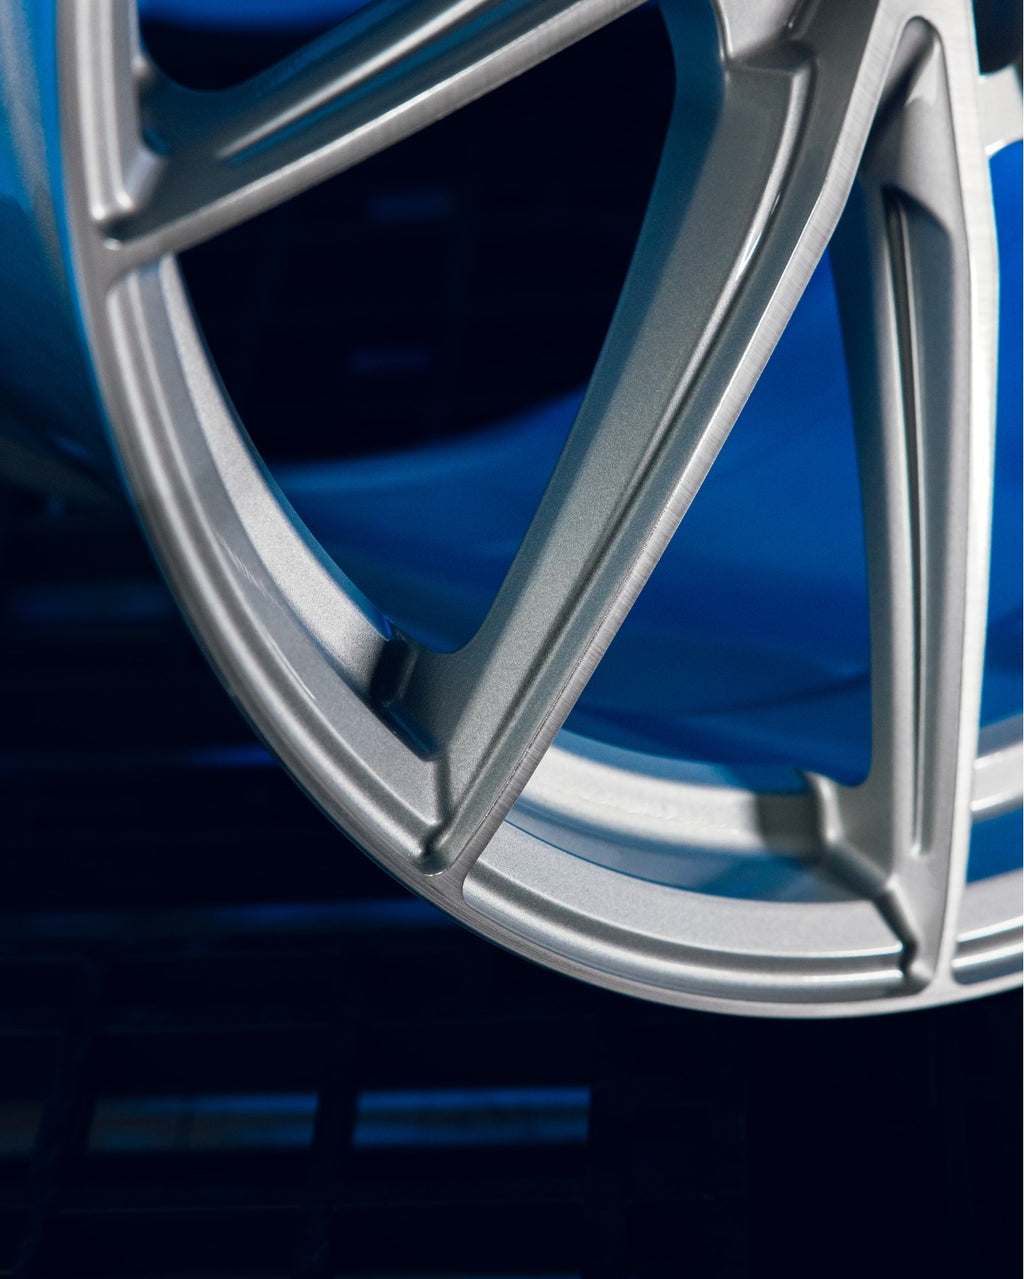 Brada - FormTech Line CX1 Hybrid Rotary Forged Wheel - BMW (5x112)